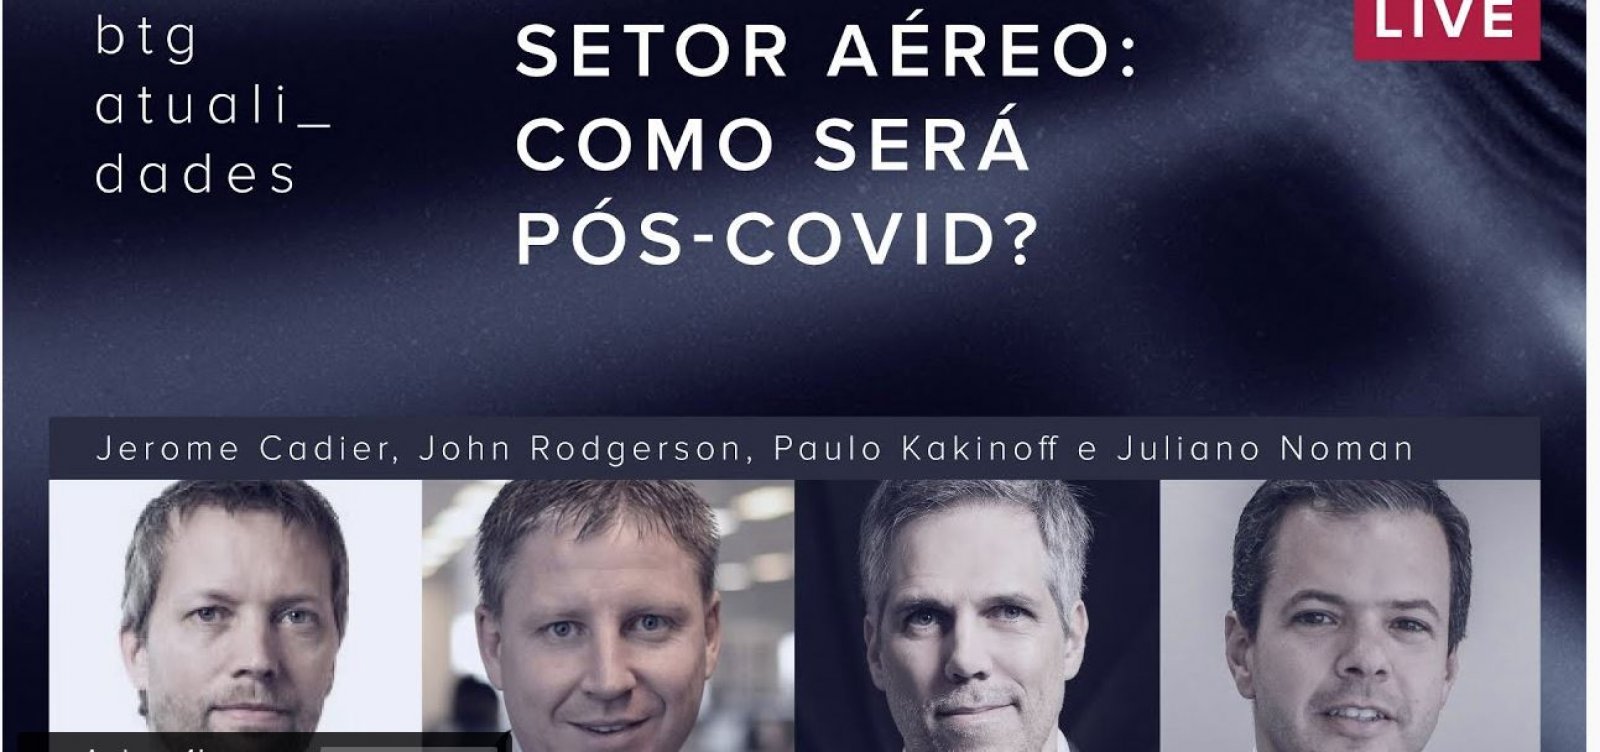 CEOs da Latam, Azul e Gol debatem setor aéreo no pós-Covid